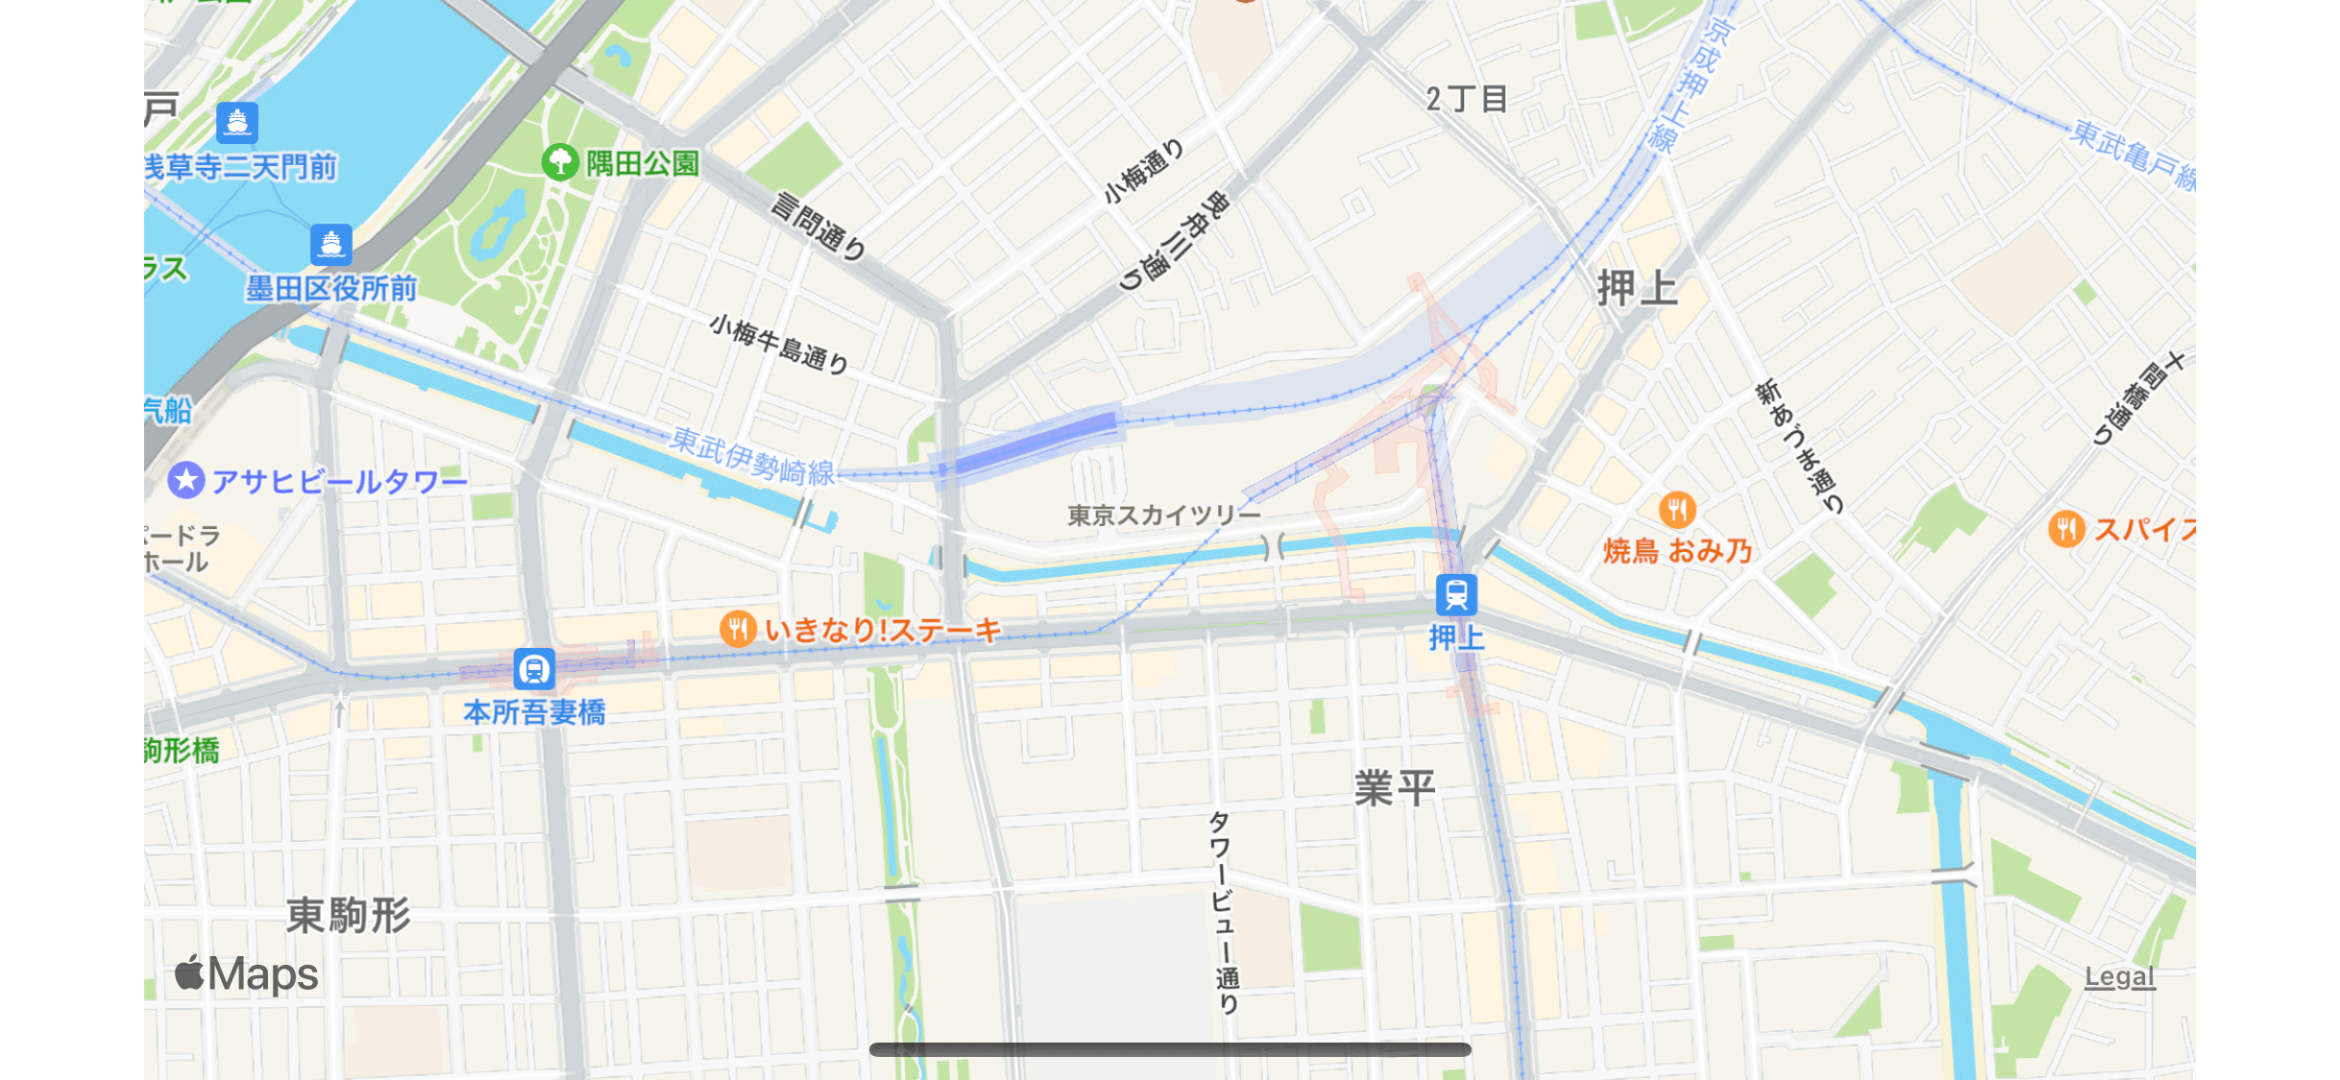 SwiftUIのMapKitで表示した東京スカイツリーの地図